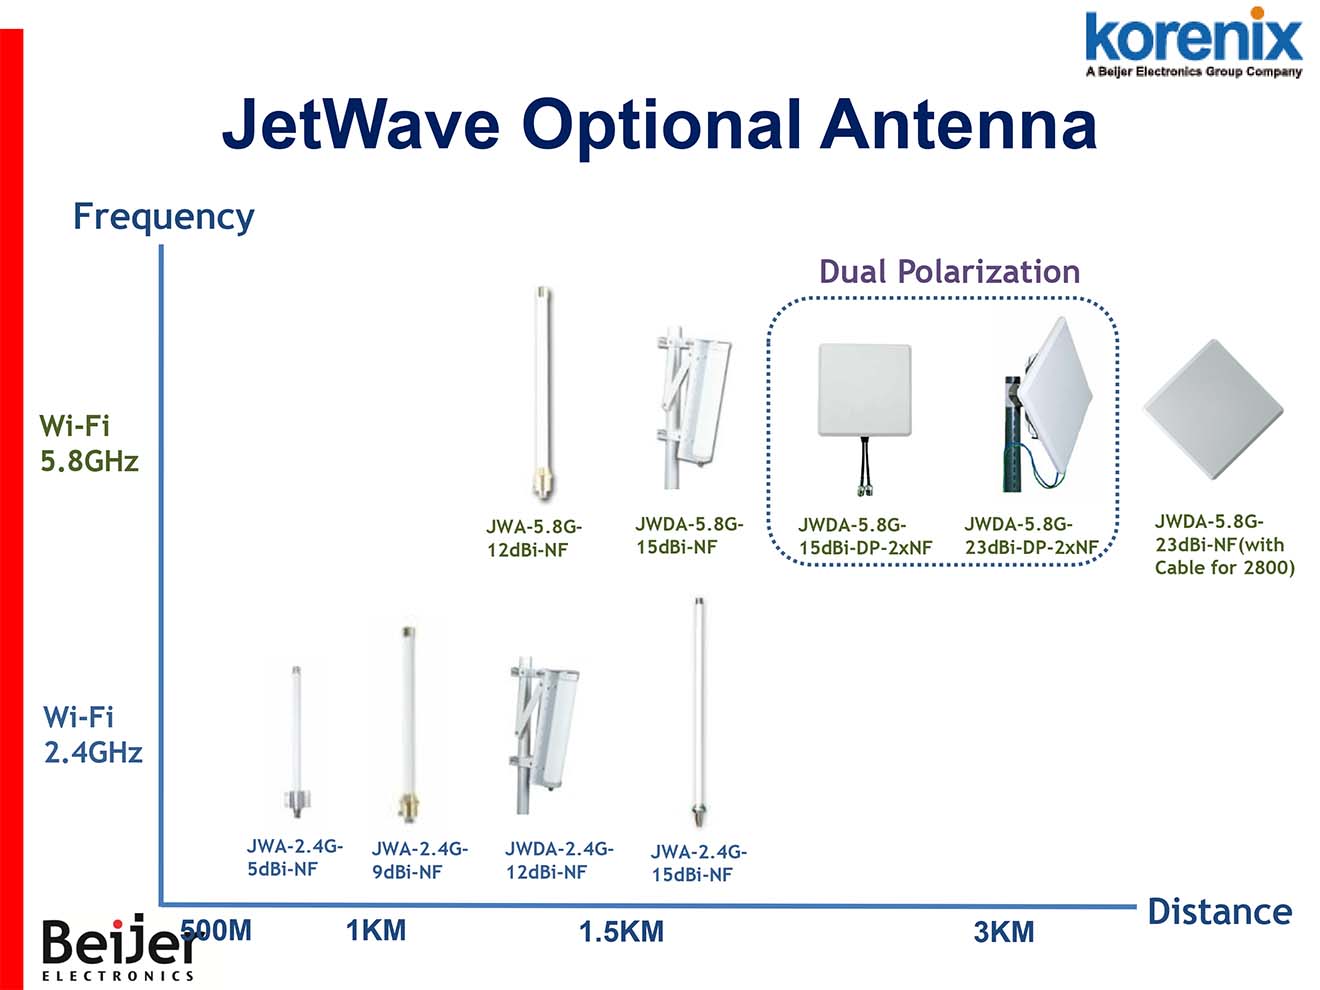 JWDA-5.8G-12dBi-NF Korenix Anten Omi đẳng hướng tăng khoảng cách thu phát sóng 12dBi